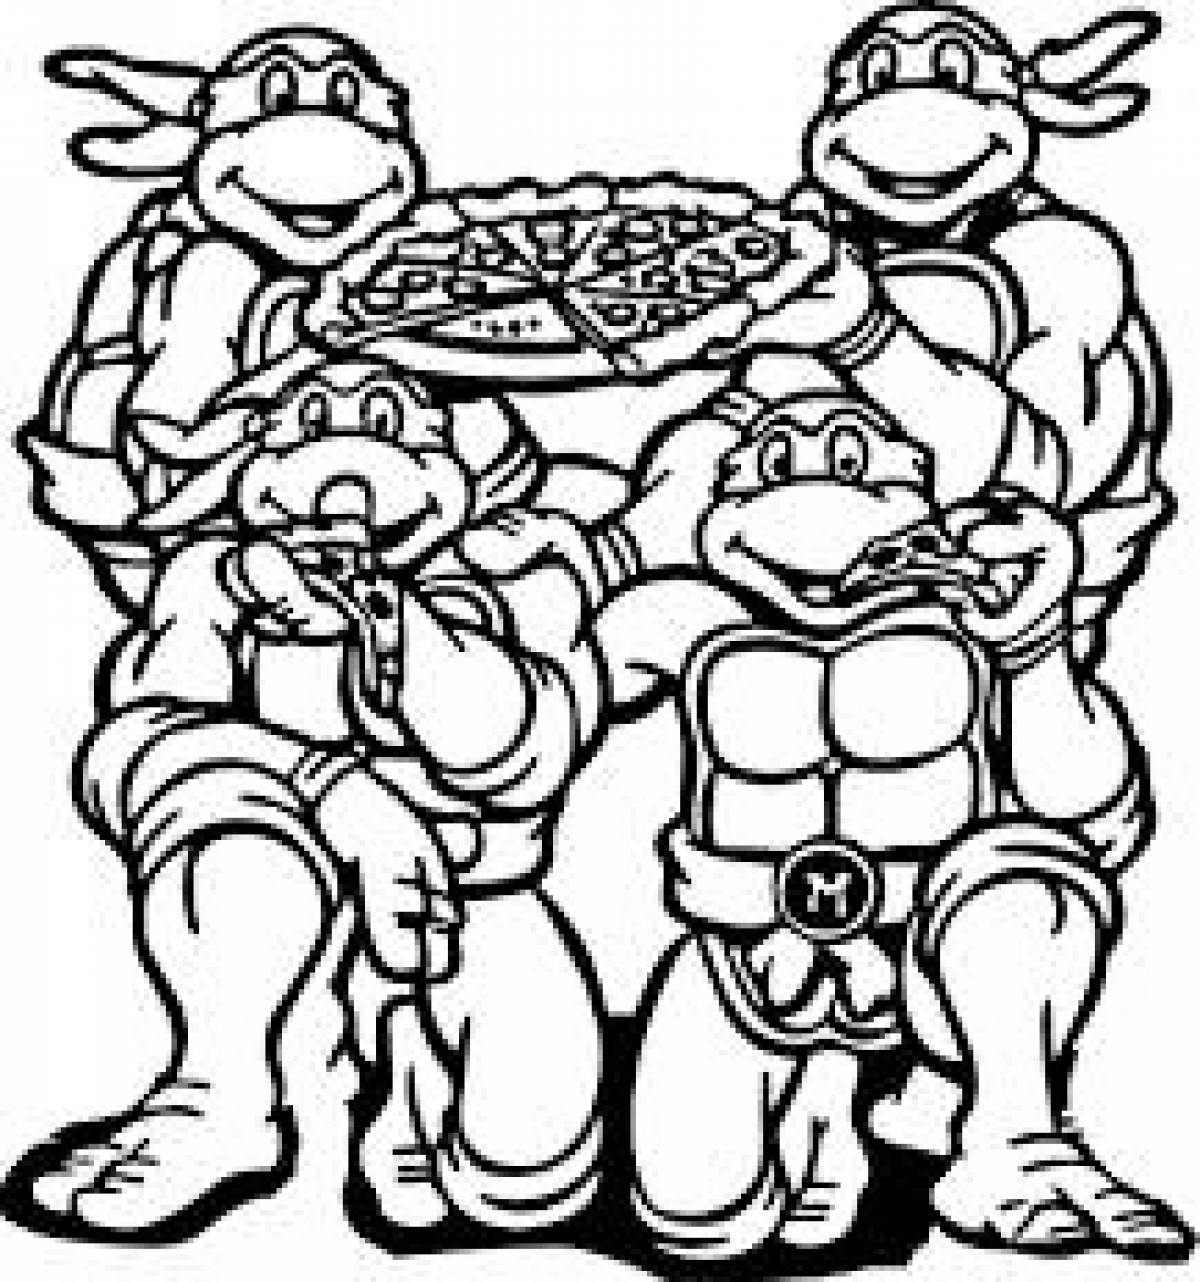 Teenage Mutant Ninja Turtles and pizza